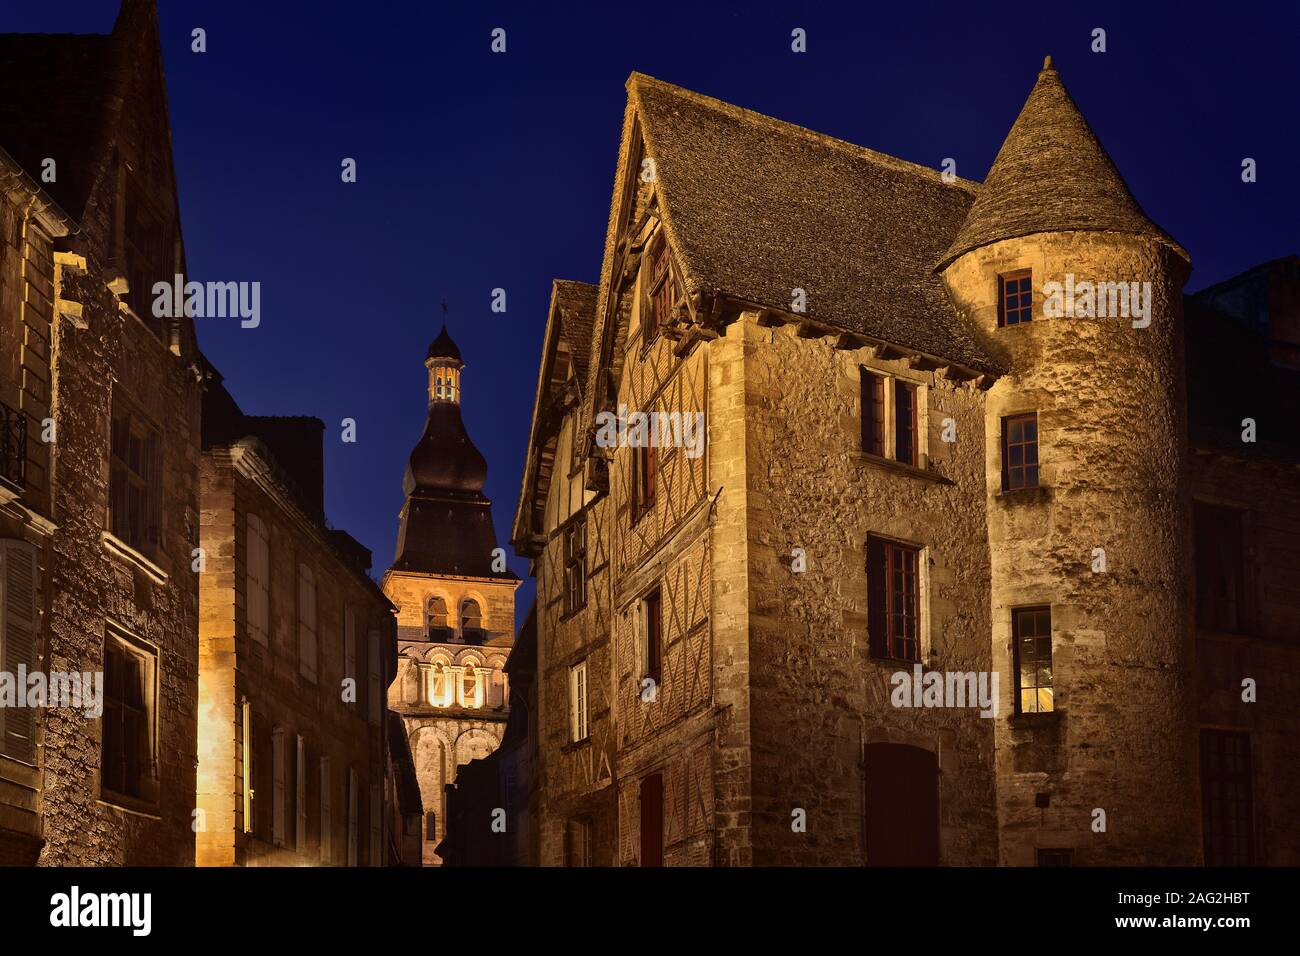 Atardecer paisaje histórico de casas antiguas en las calles de la ciudad medieval de Sarlat, en el sur de Francia. Sarlat La Caneda, Dordogne; Sudoeste de Francia viajes Foto de stock